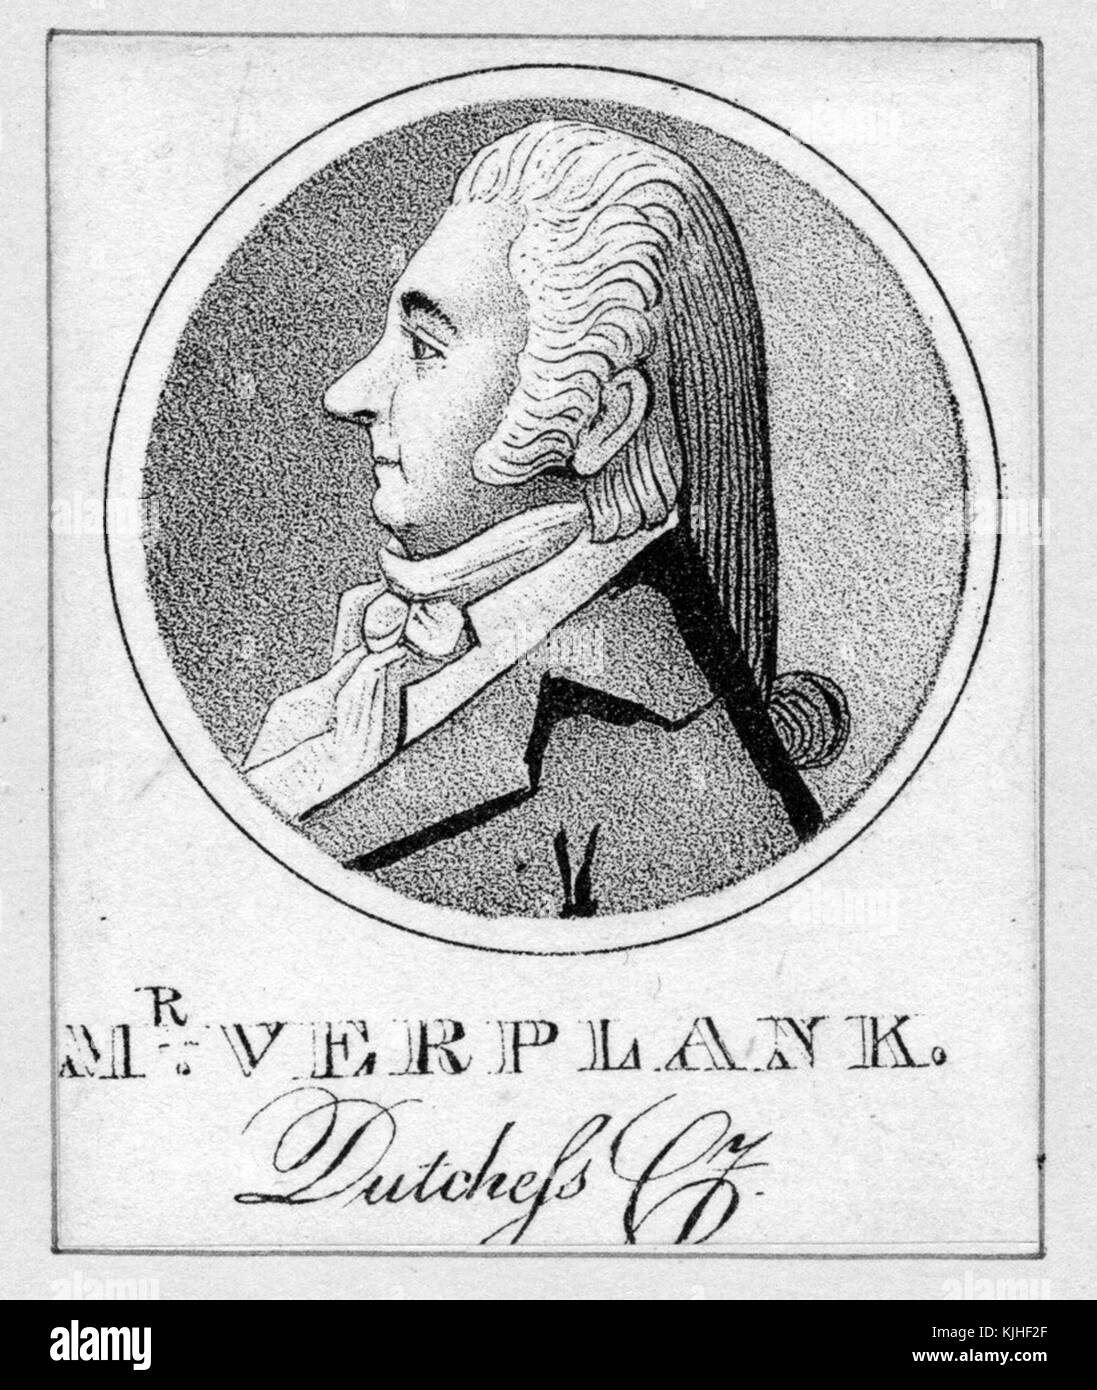 Une gravure d'un portrait de Gulian Verplanck, il était un homme d'affaires et un homme politique de New York, il était membre de l'Assemblée de l'État de New York et a servi deux mandats comme orateur, il est devenu le président de la Banque de New York, il a également été l'un des fondateurs du précurseur de la Bourse de New York, New York, 1830. De la Bibliothèque publique de New York. Banque D'Images